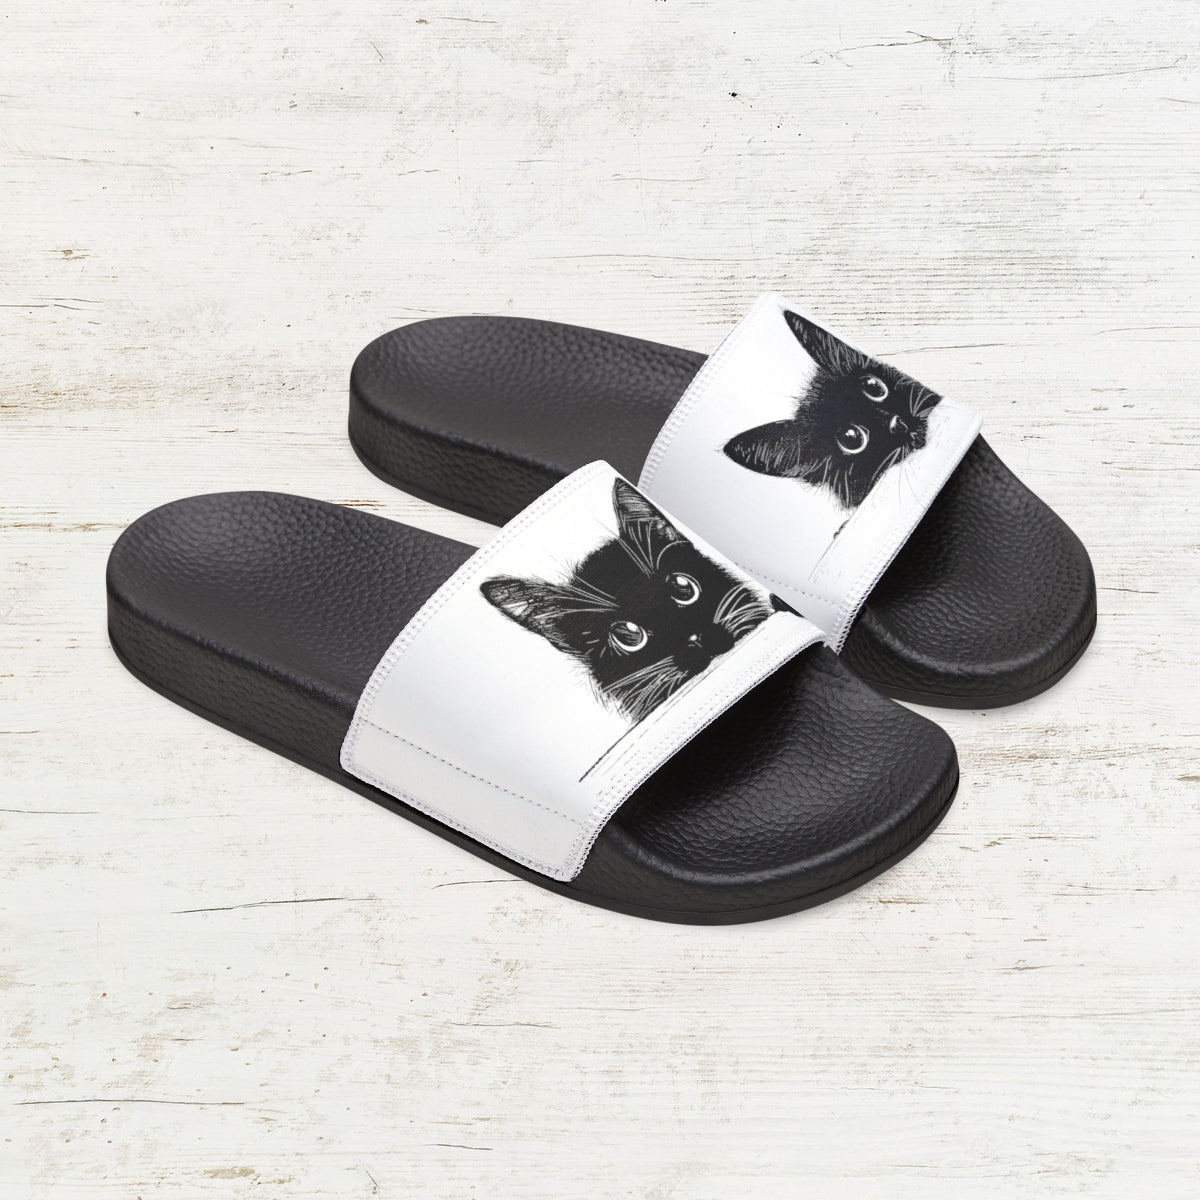 Double Cute Black Cat Art Slide Sandals, Women & Girls Two Black Cat Slip-on Shoes - FlooredByArt